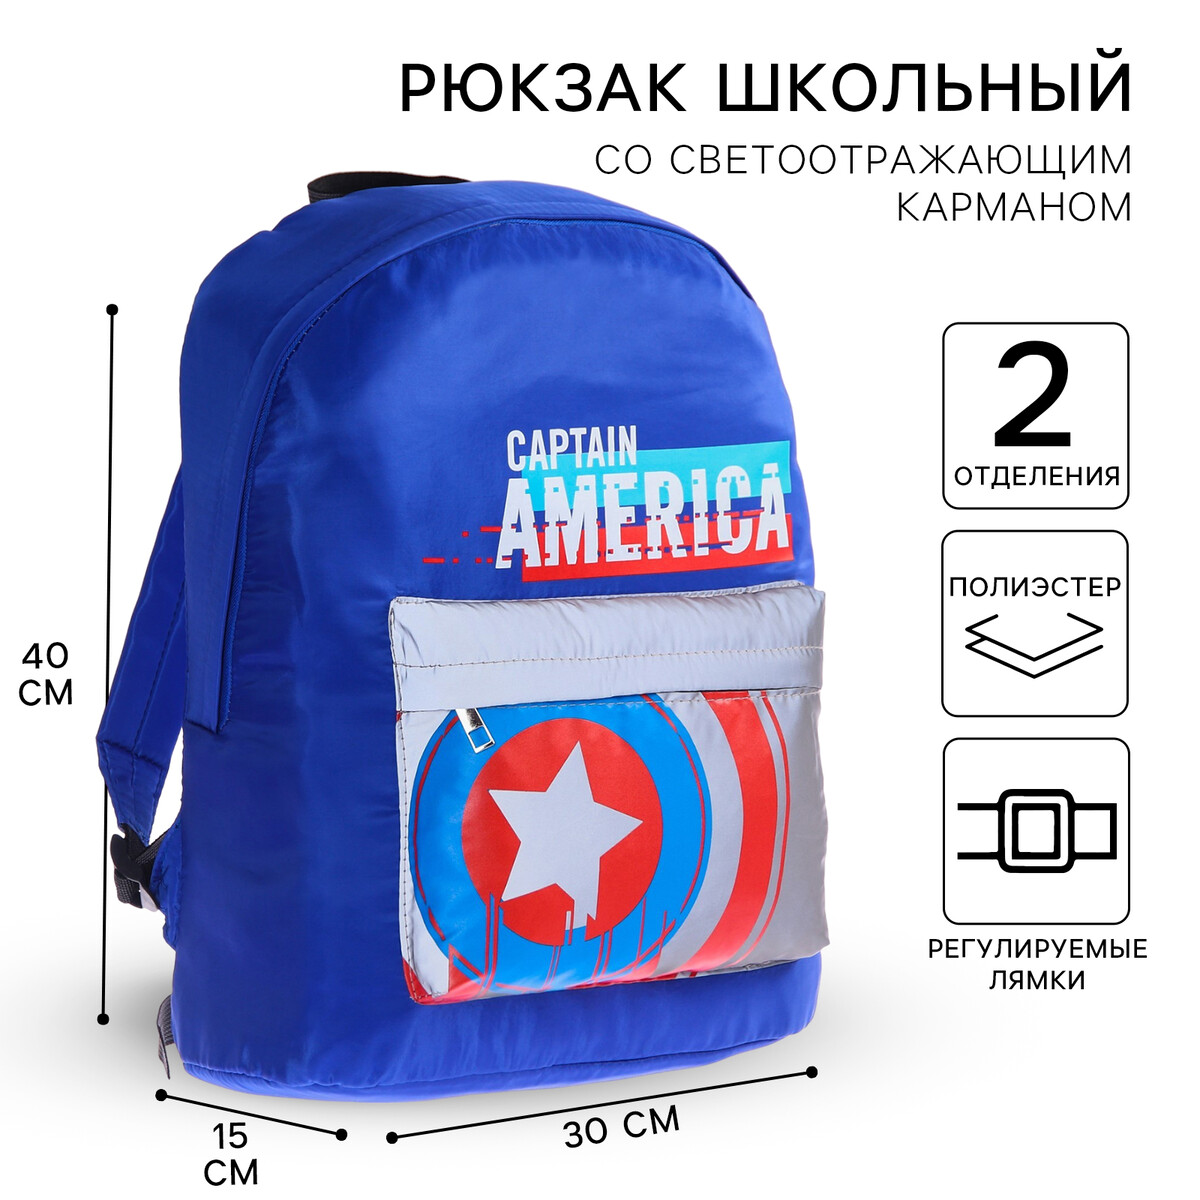 Рюкзак со светоотражающим карманом, 30 см х 15 см х 40 см MARVEL